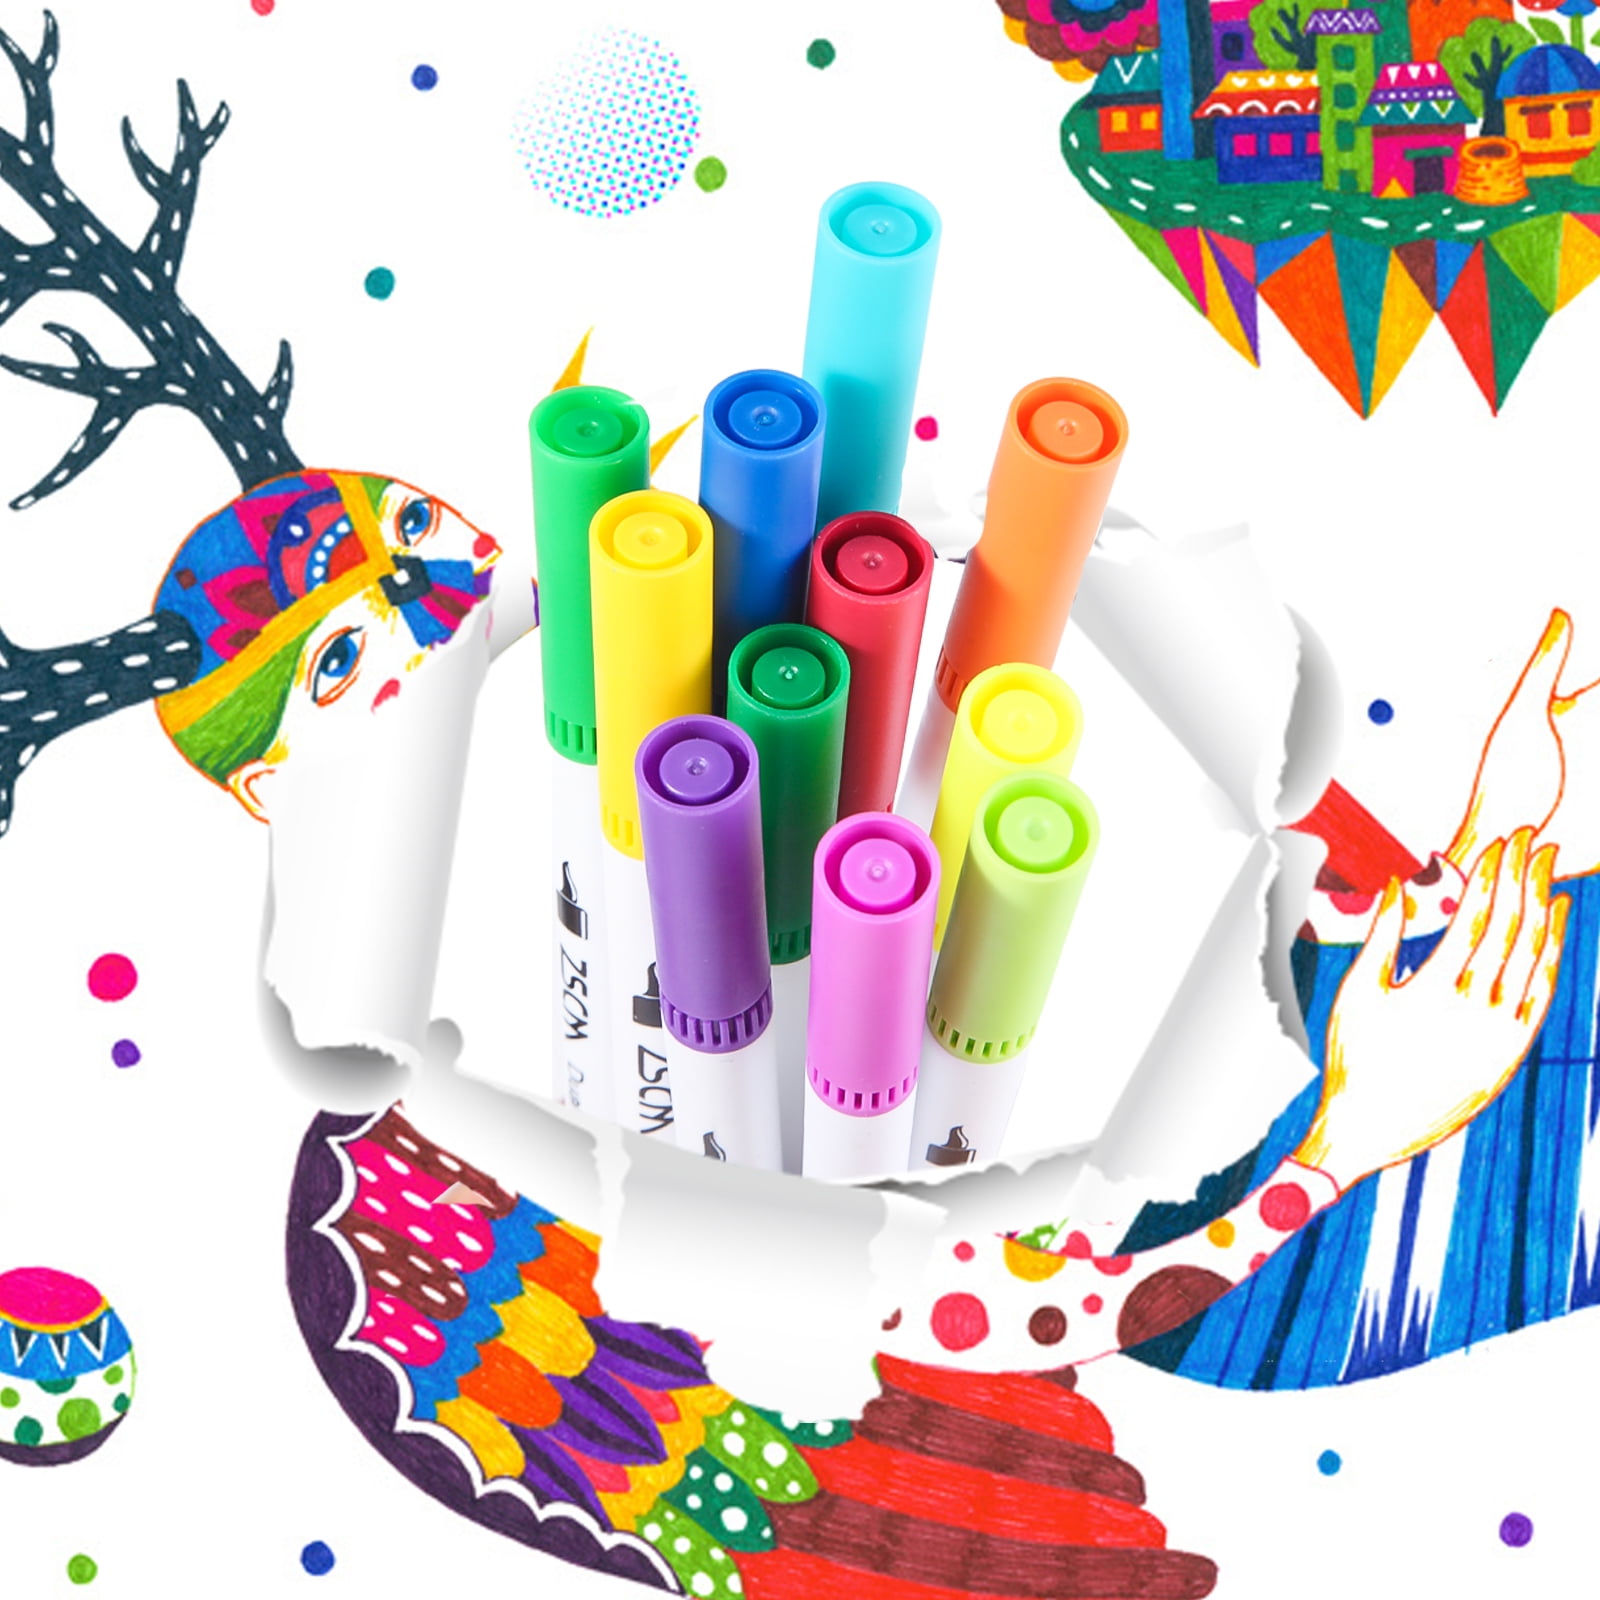 MAIKEDEPOT Felt Tip Pens, 15pcs Calligraphy Pen Assorted Colors Sign Brush Pen Art Brush Marker Water Based Journaling Pen Set for Beginners Kids